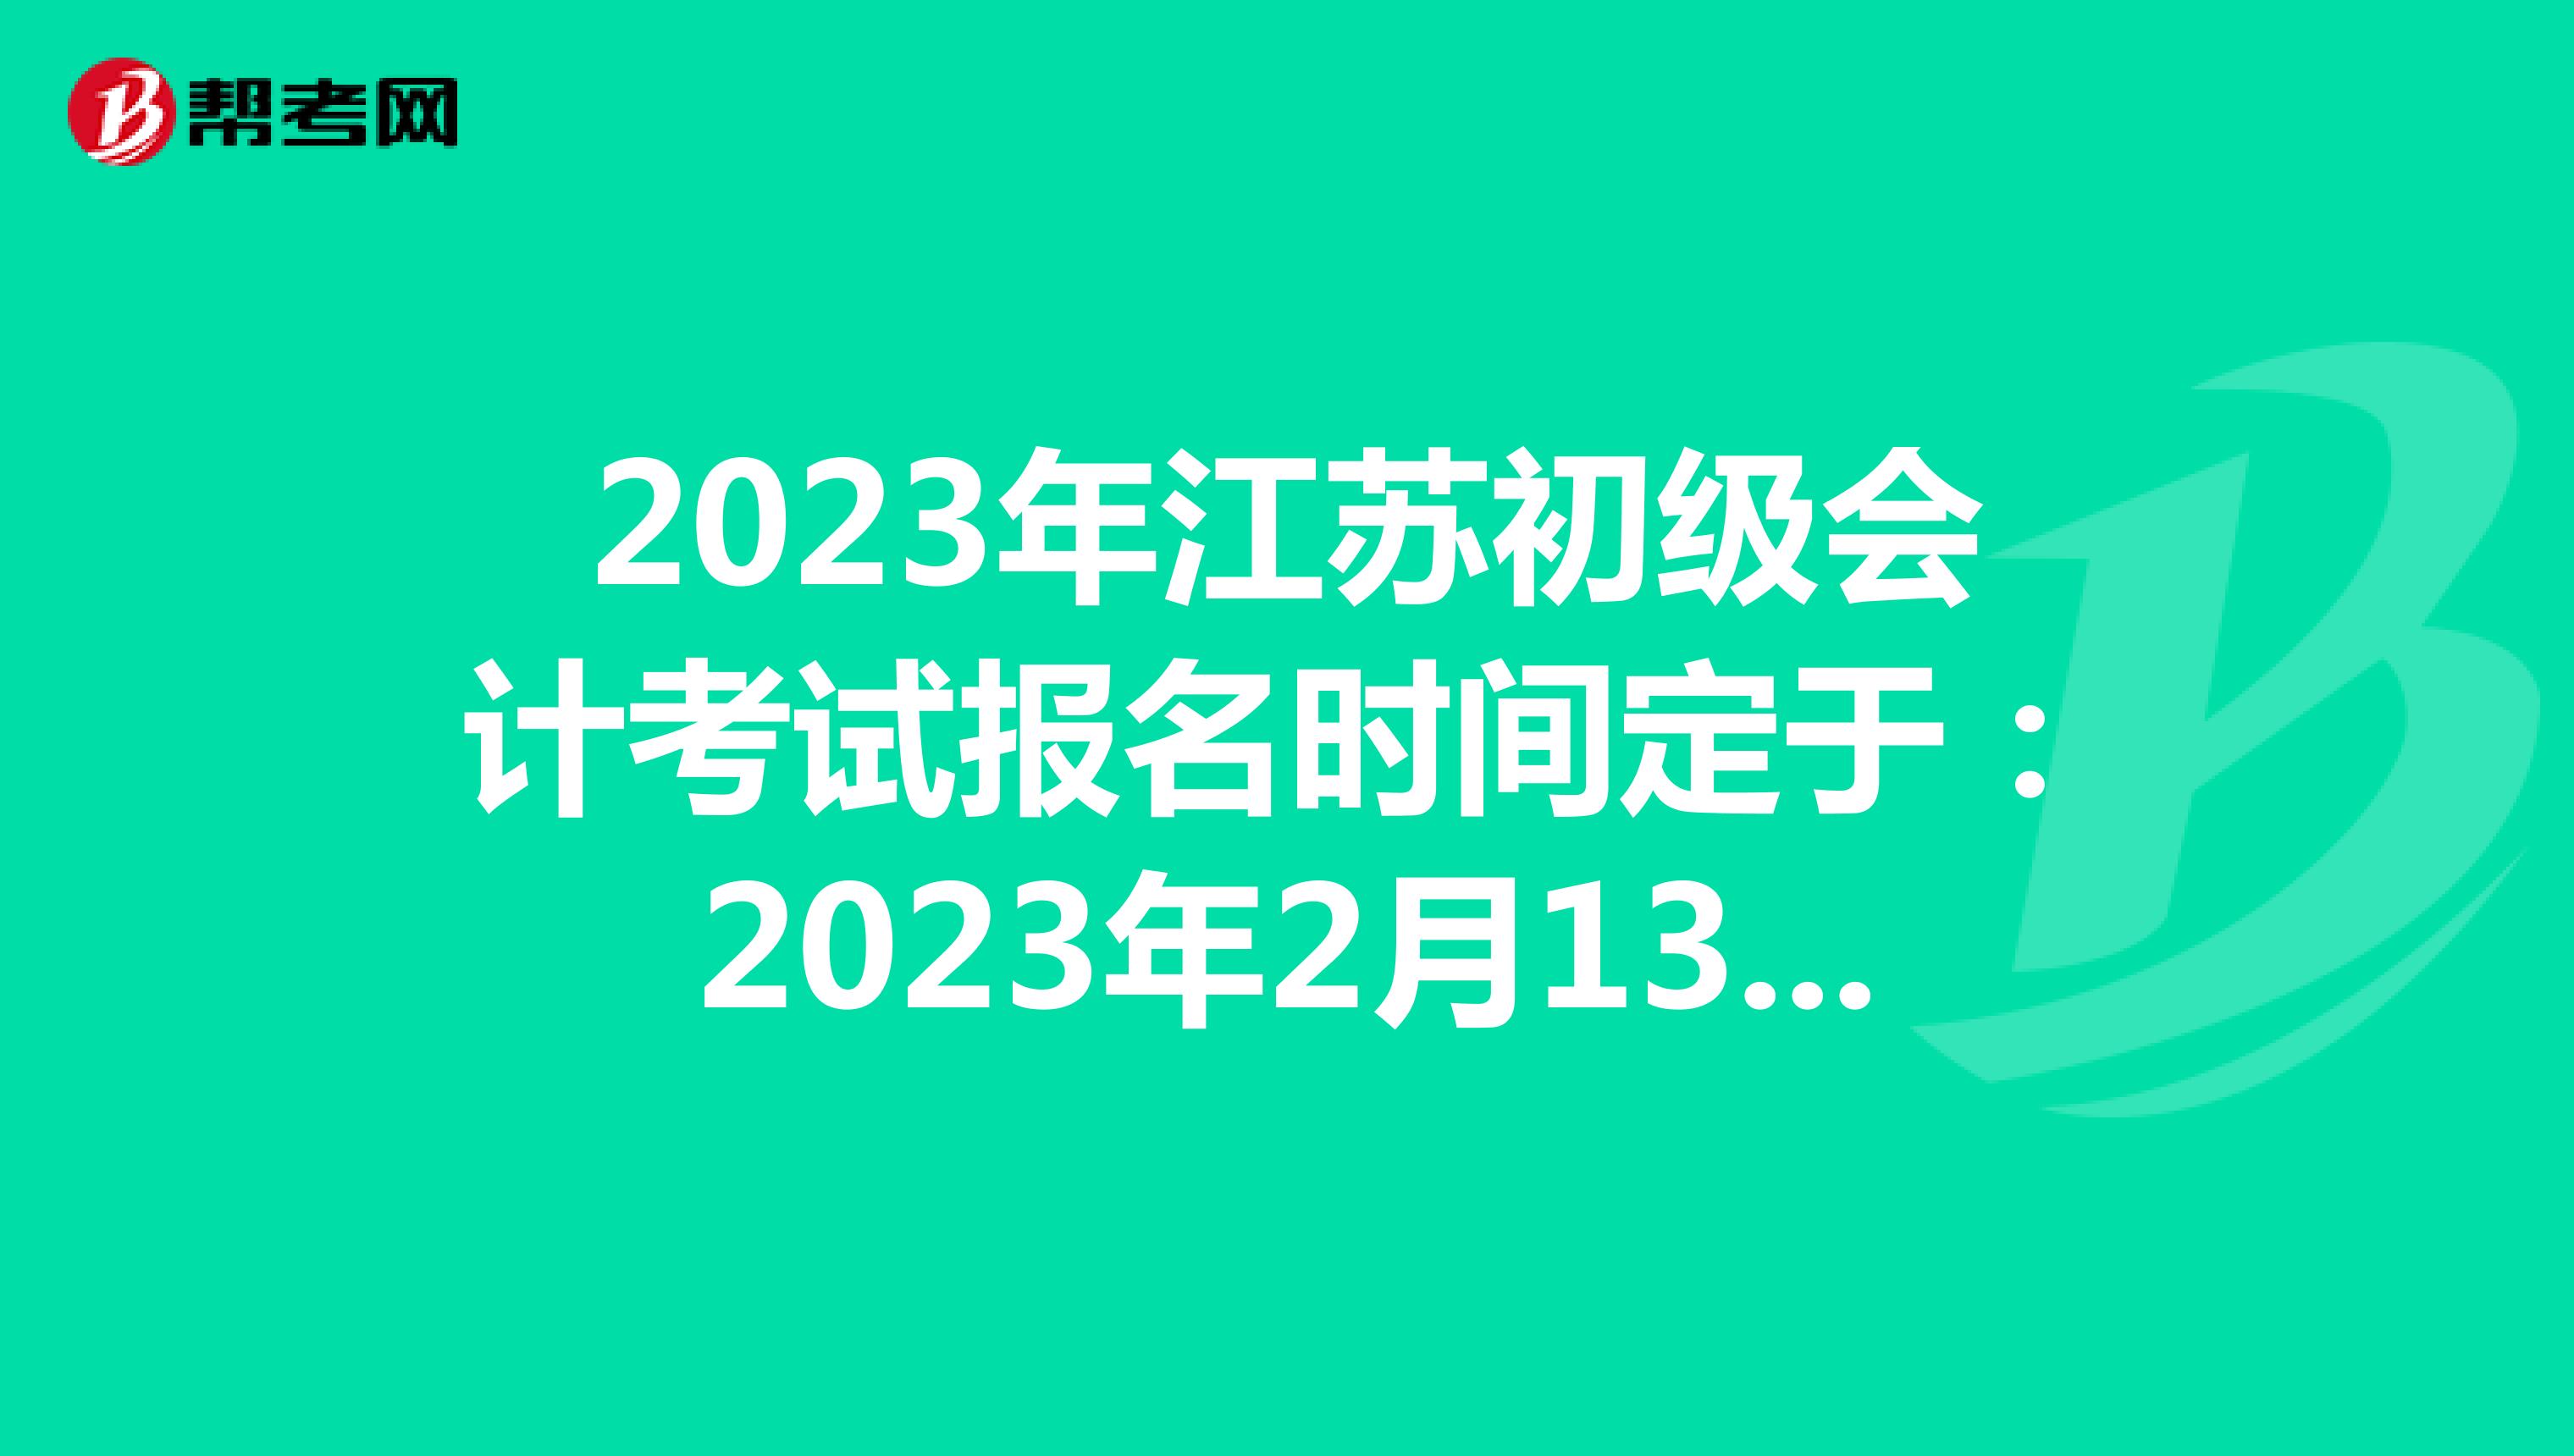 2023年江苏初级会计考试报名时间定于：2023年2月13日-28日